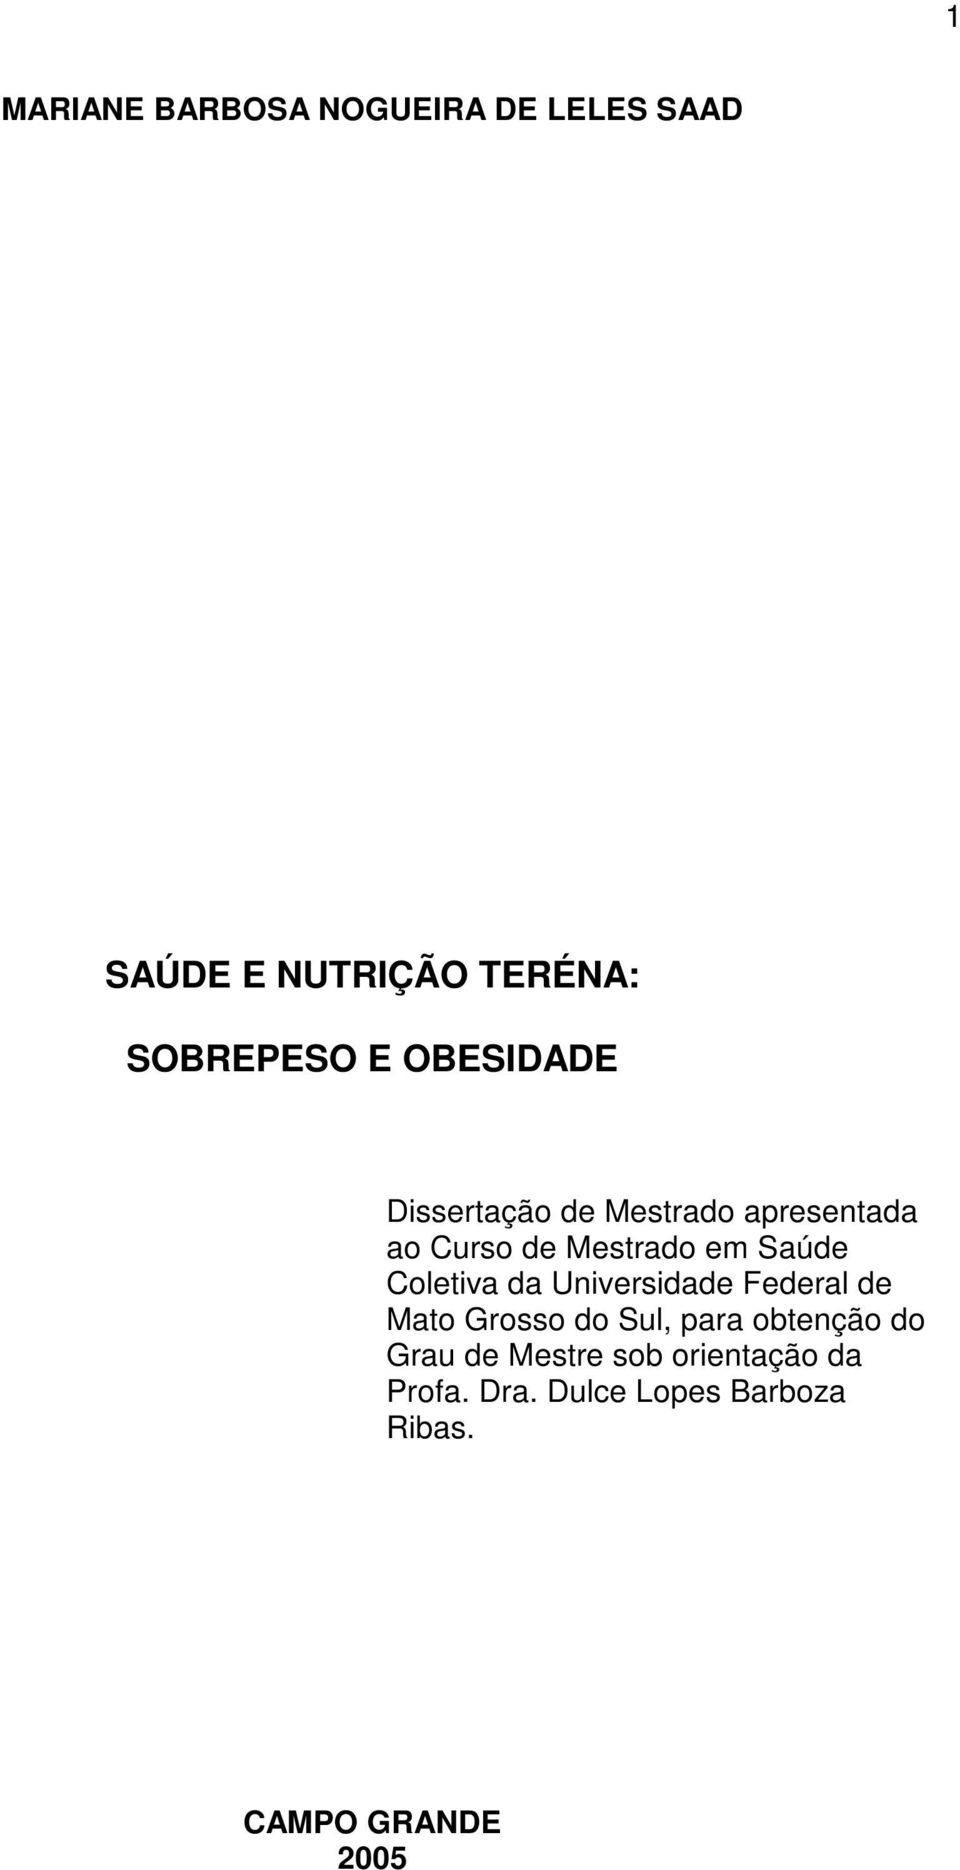 Coletiva da Universidade Federal de Mato Grosso do Sul, para obtenção do Grau